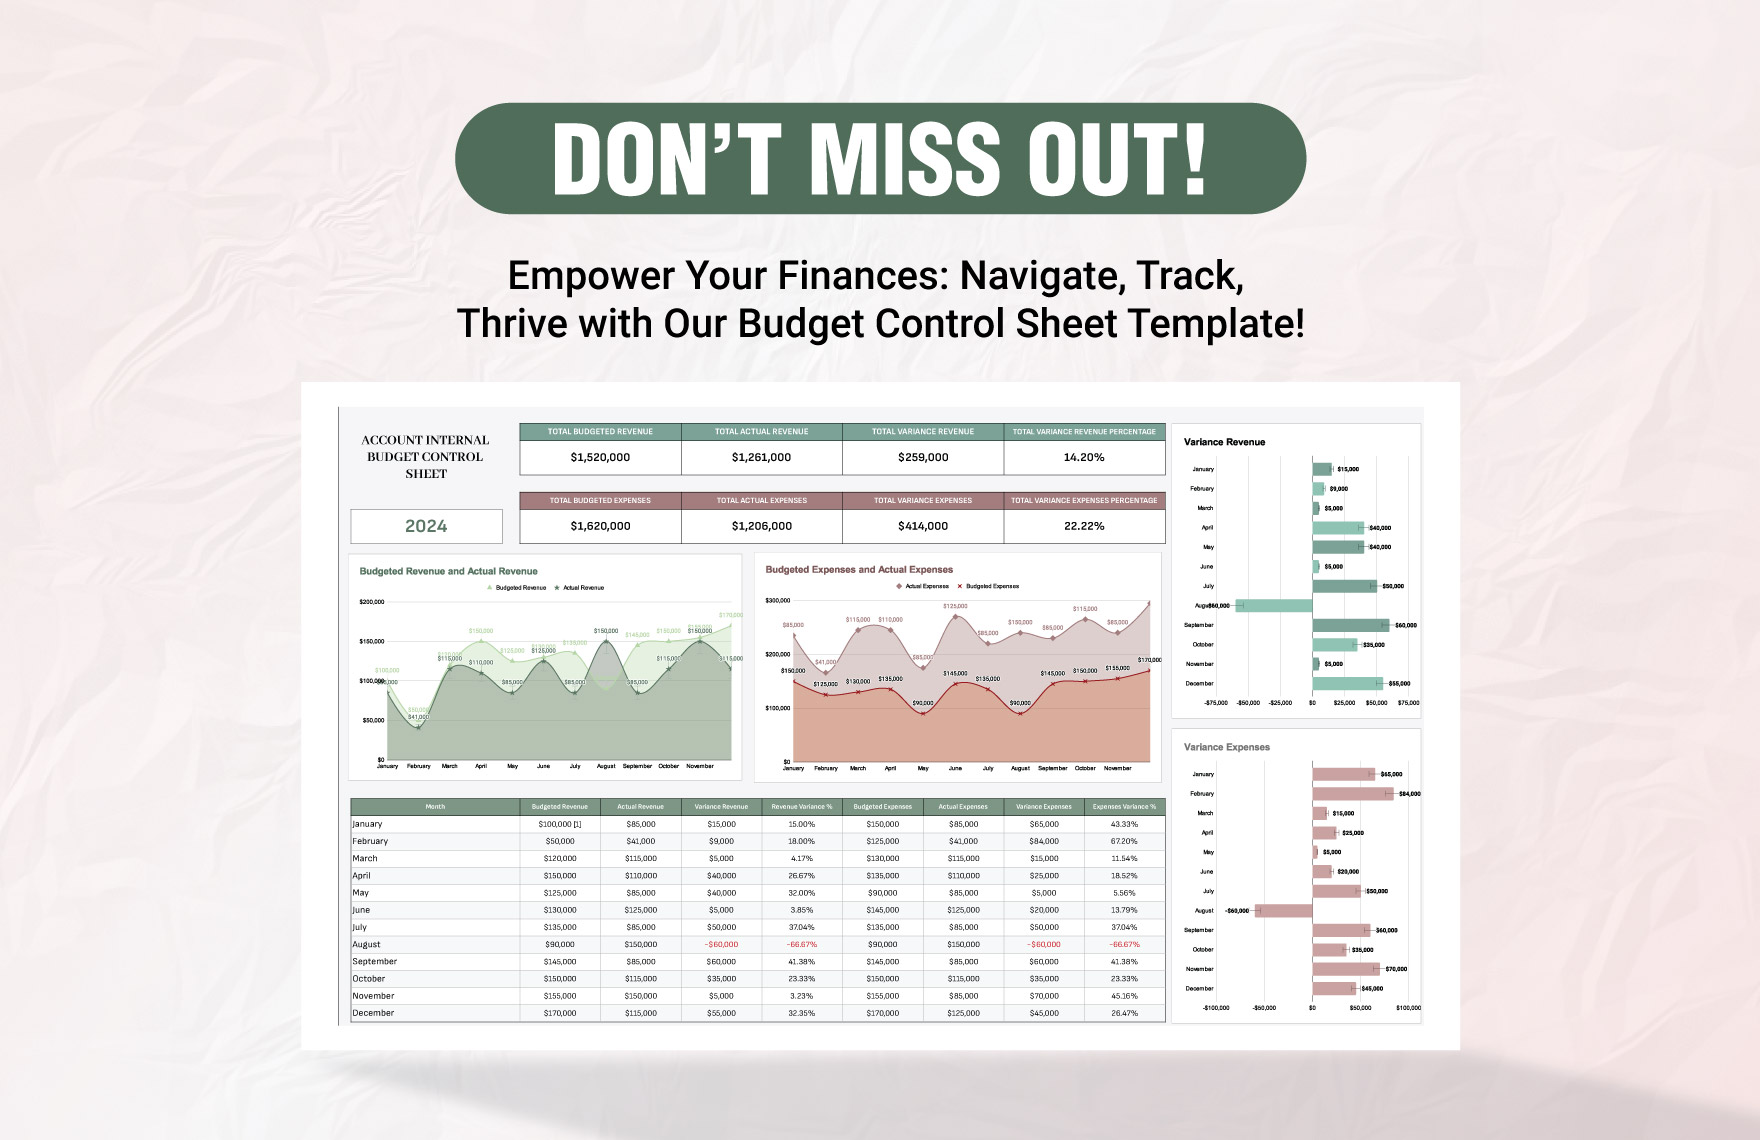 Account Internal Budget Control Sheet Template